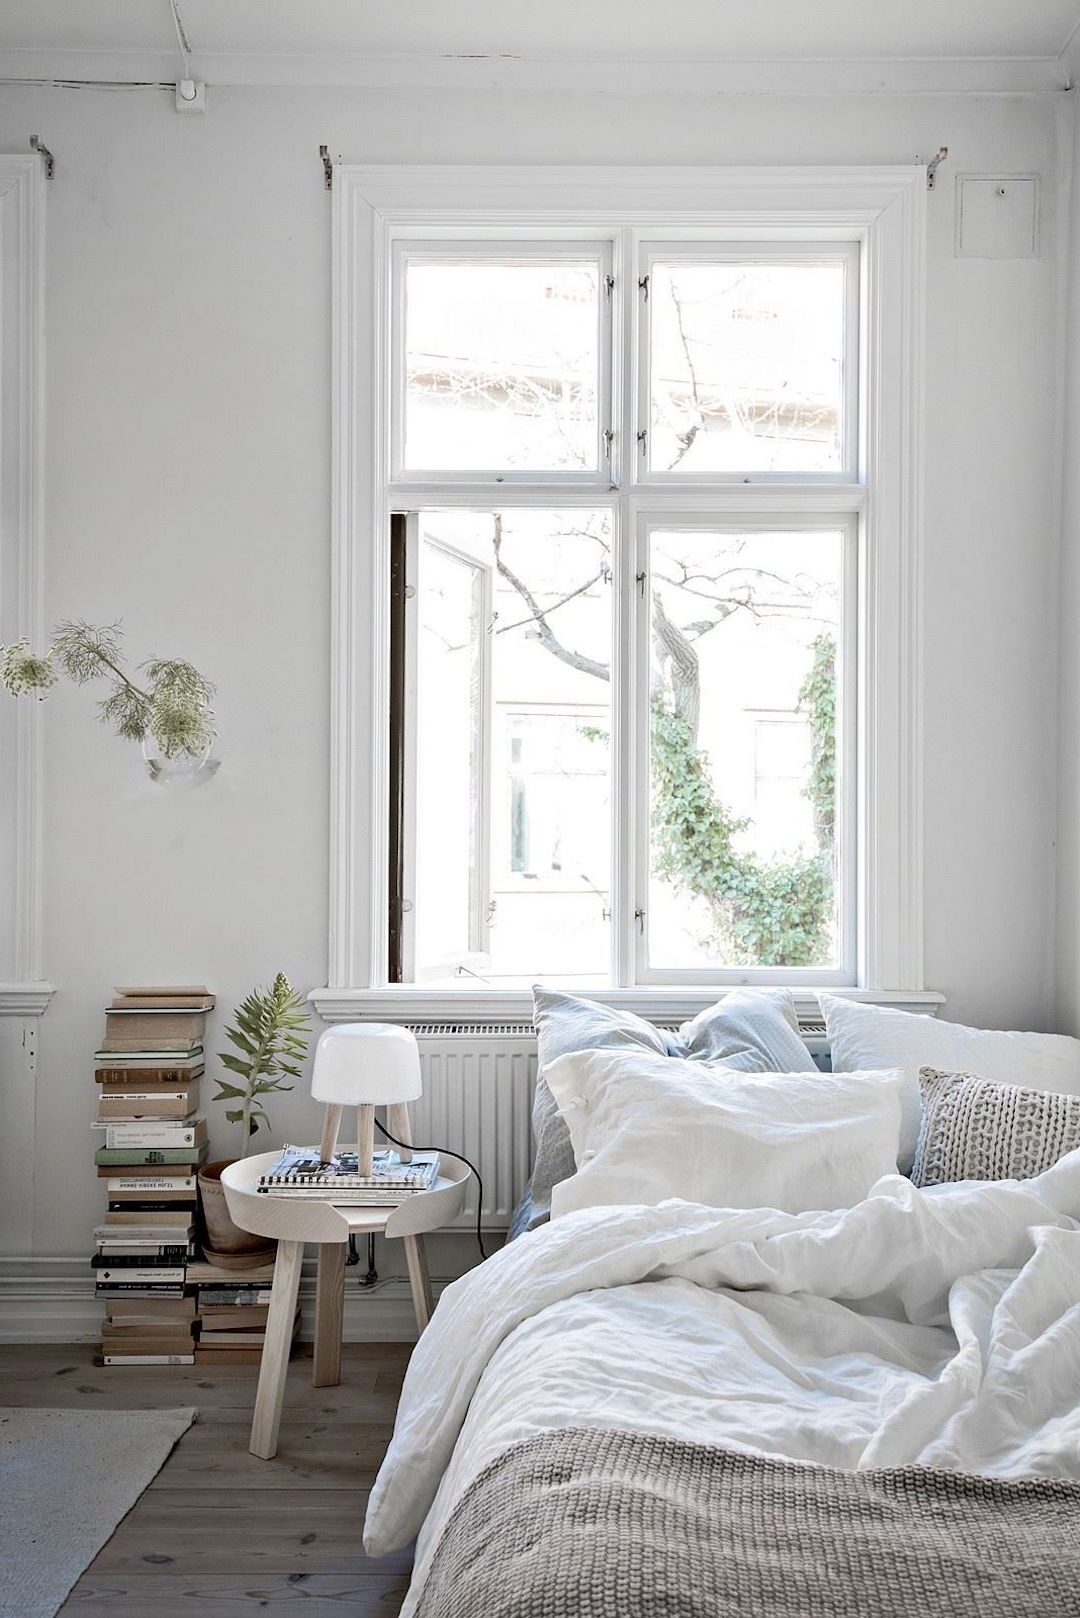 chambre minimaliste lit double blanc parquet bois tabouret ronde